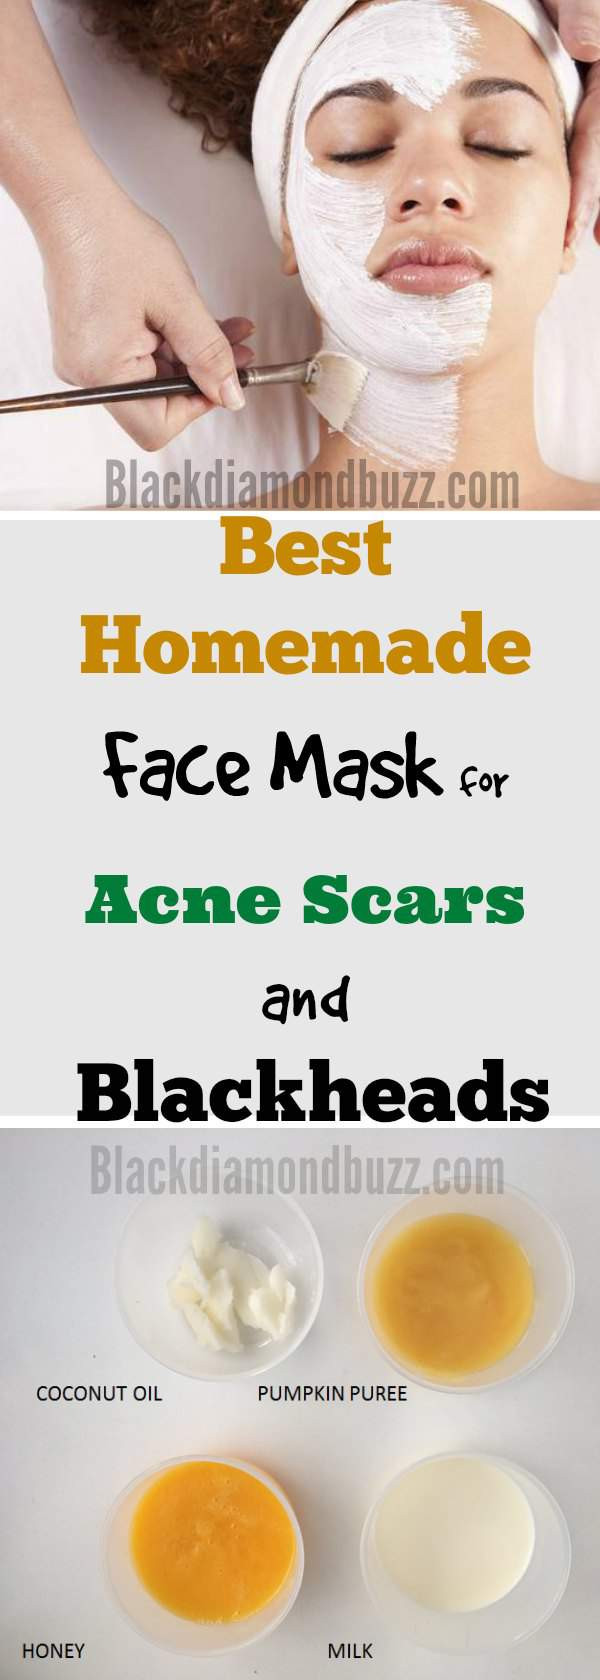 Face Masks For Acne DIY
 DIY Face Mask for Acne 7 Best Homemade Face Masks